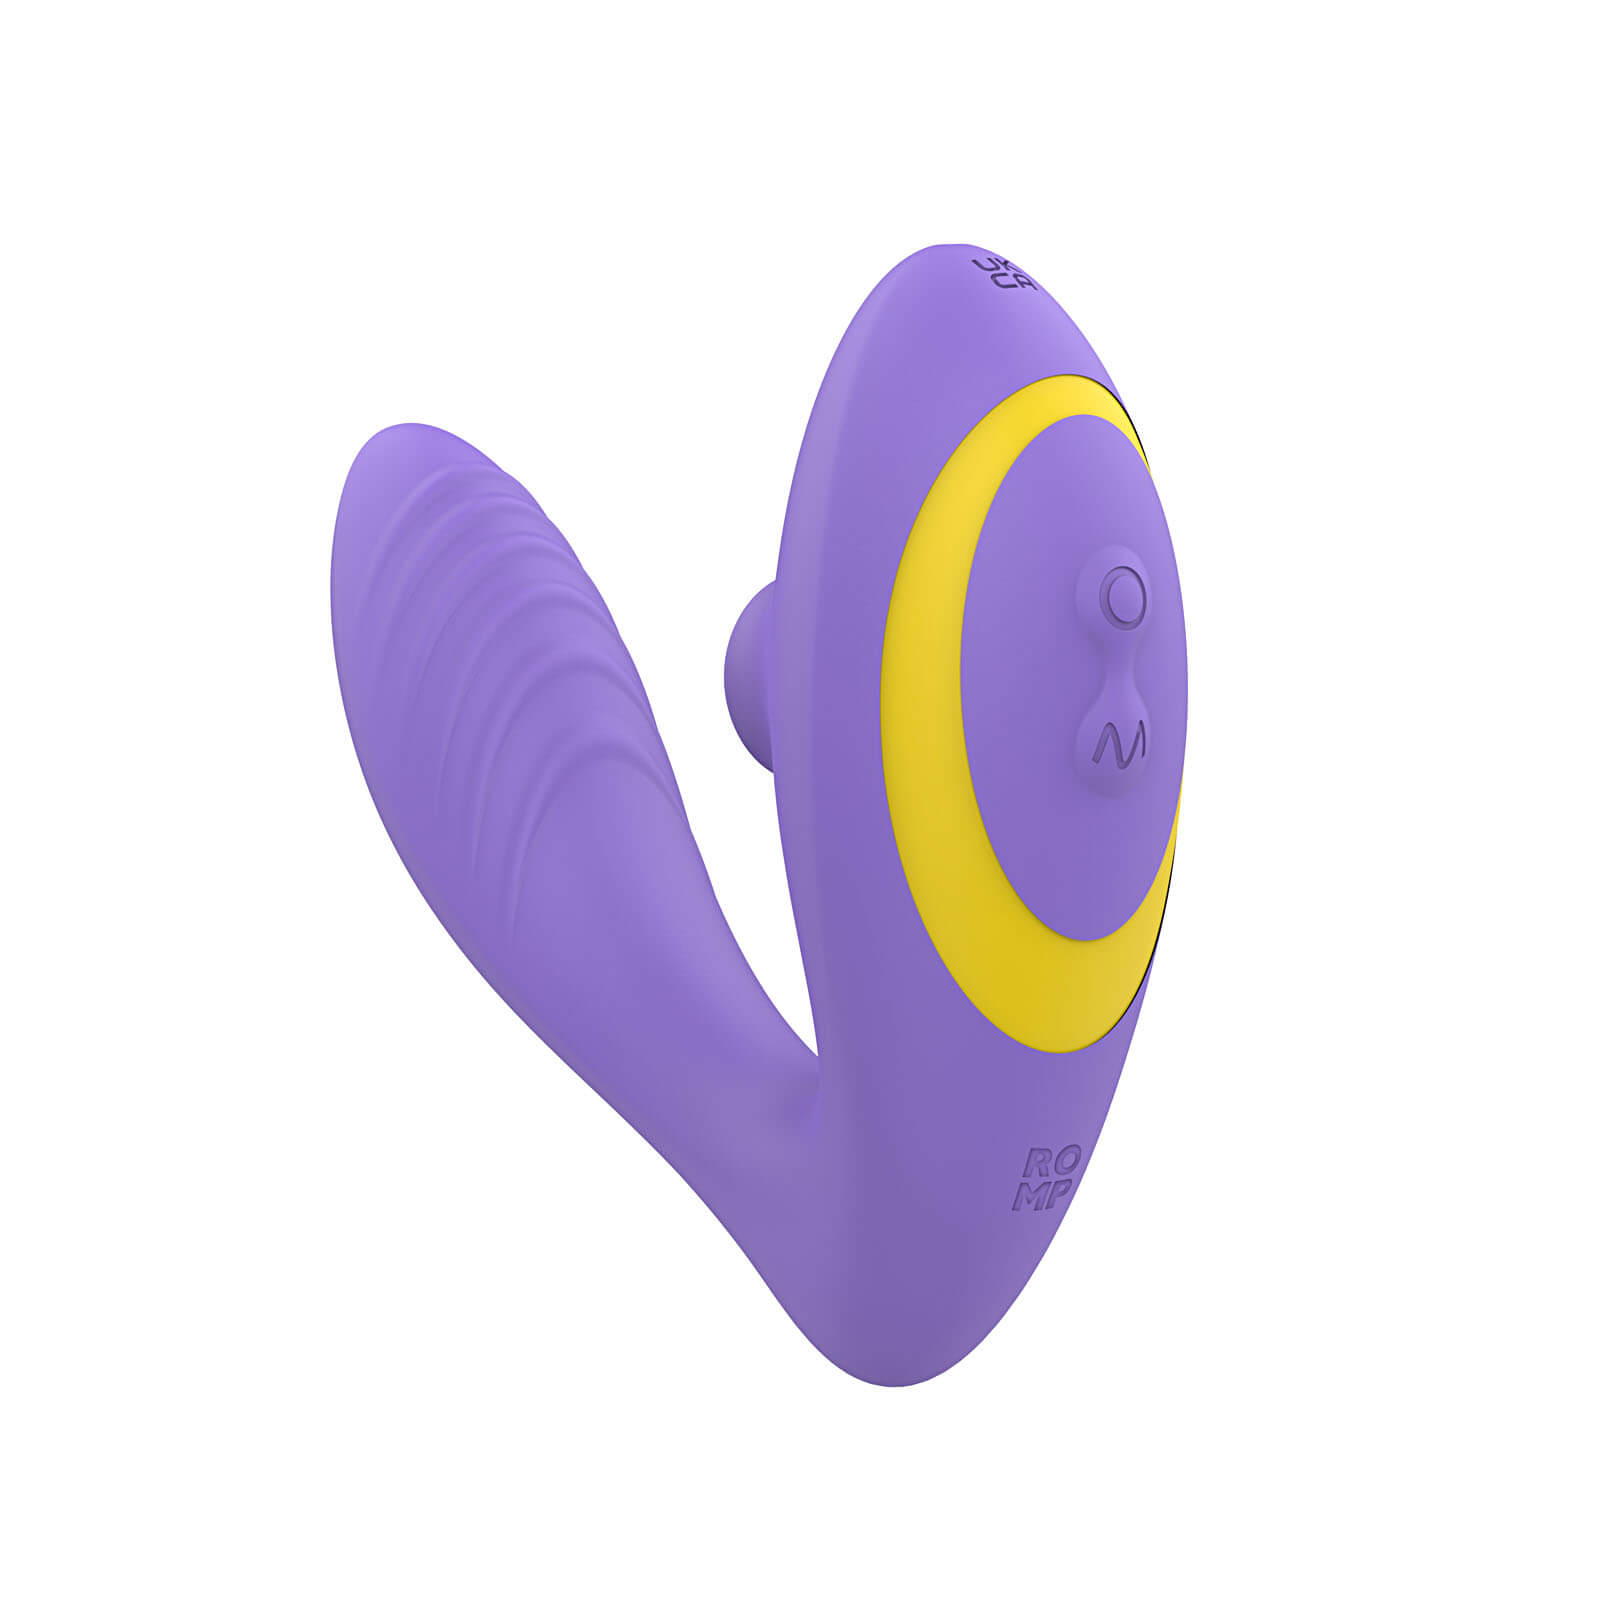 ROMP Reverb, dvojitý G-spot a vibrátor na klitoris